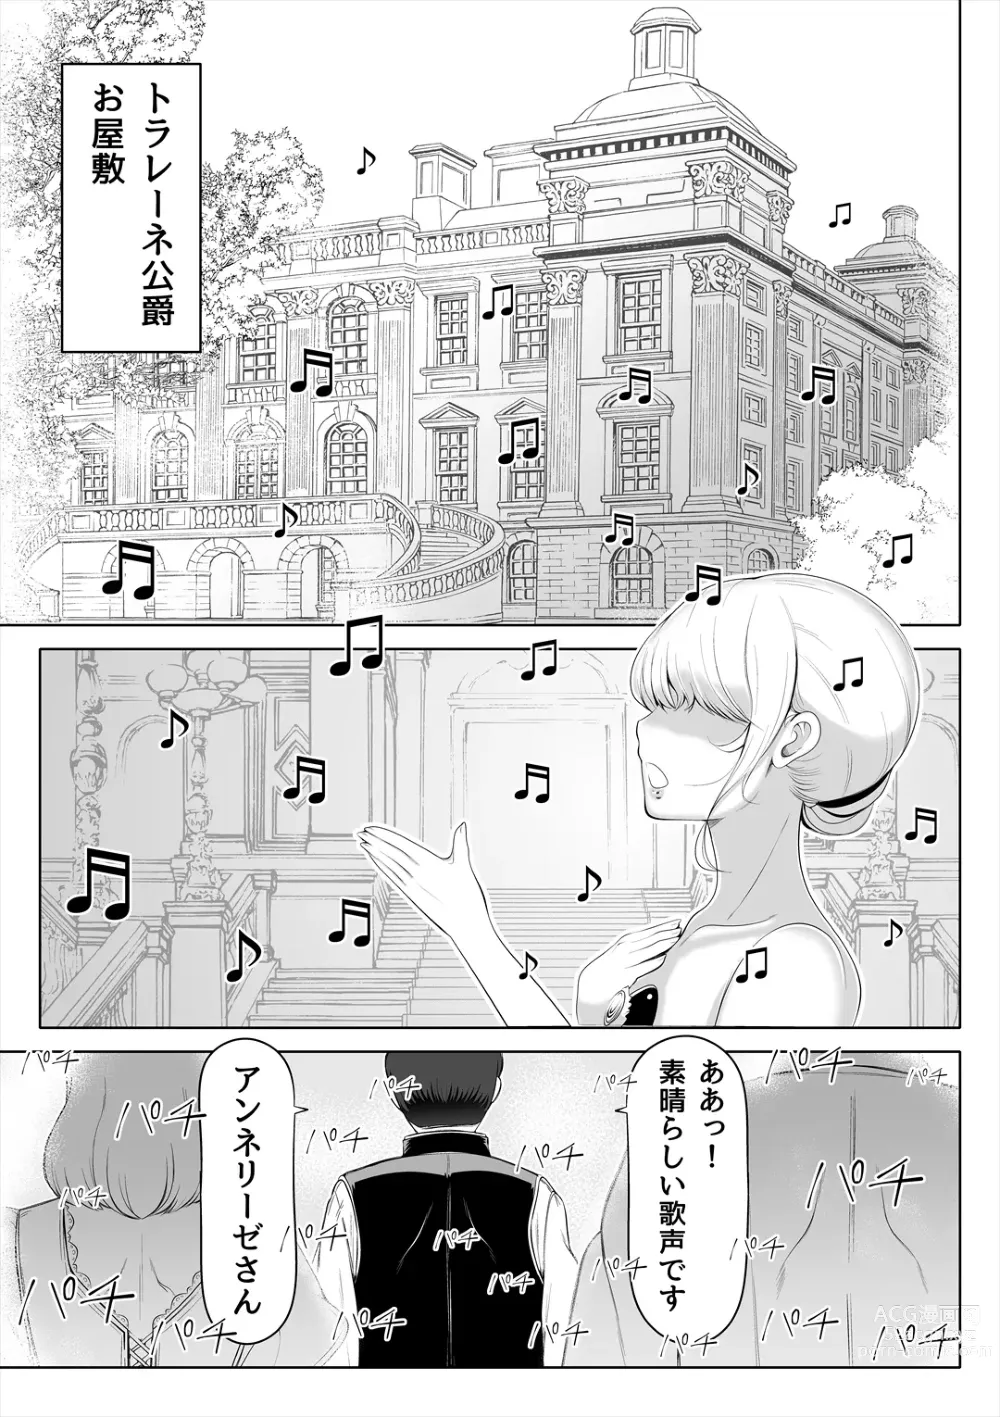 Page 4 of doujinshi Kyousei no Hanayome ~Kegareta Chouritsu~